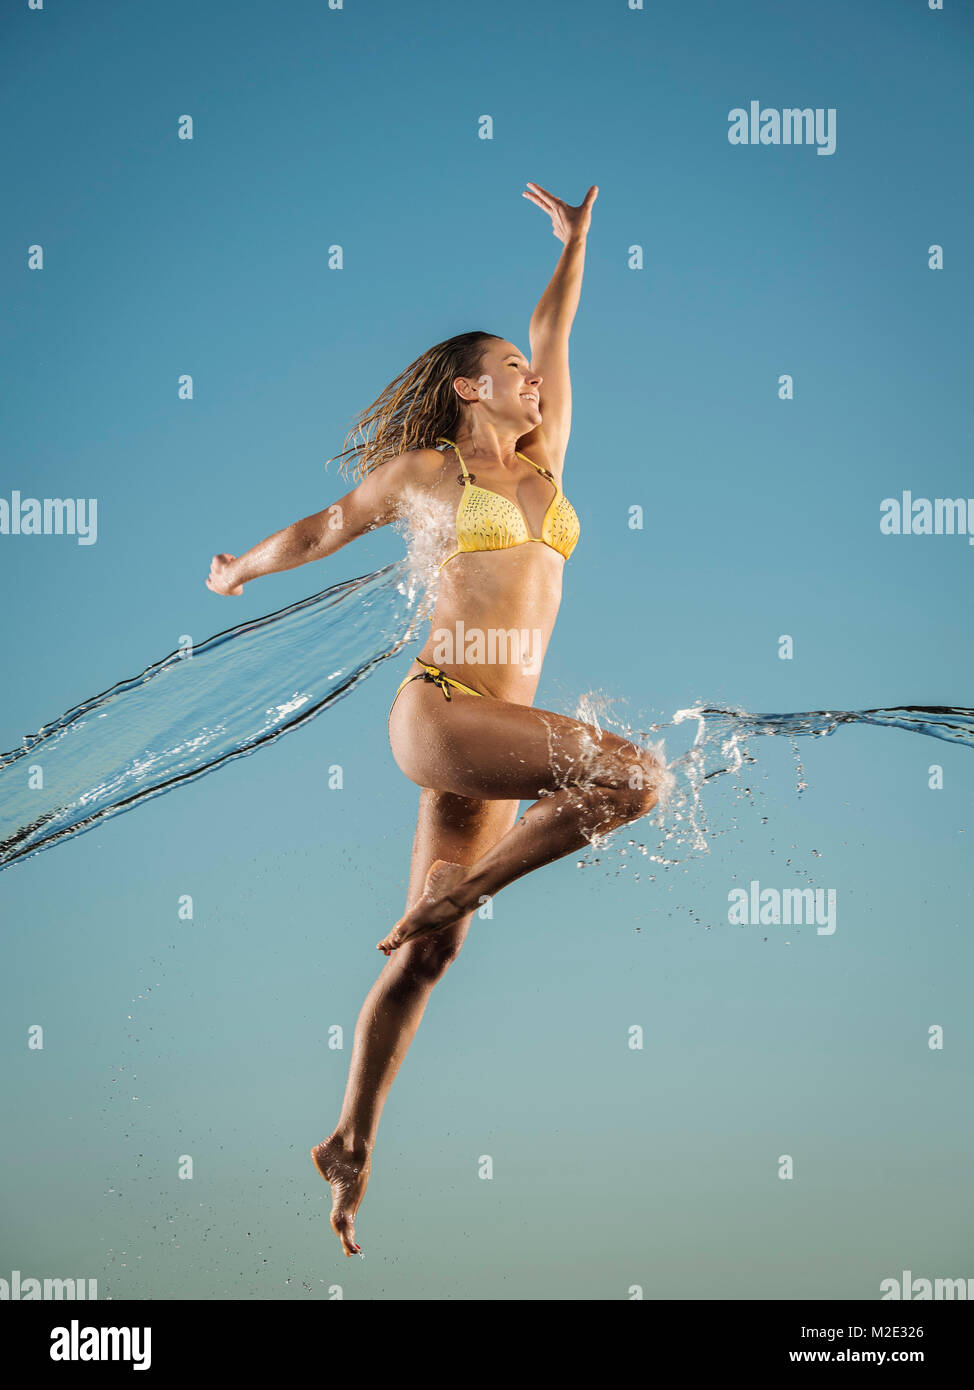 Water splashing on Caucasian woman jumping in bikini Stock Photo